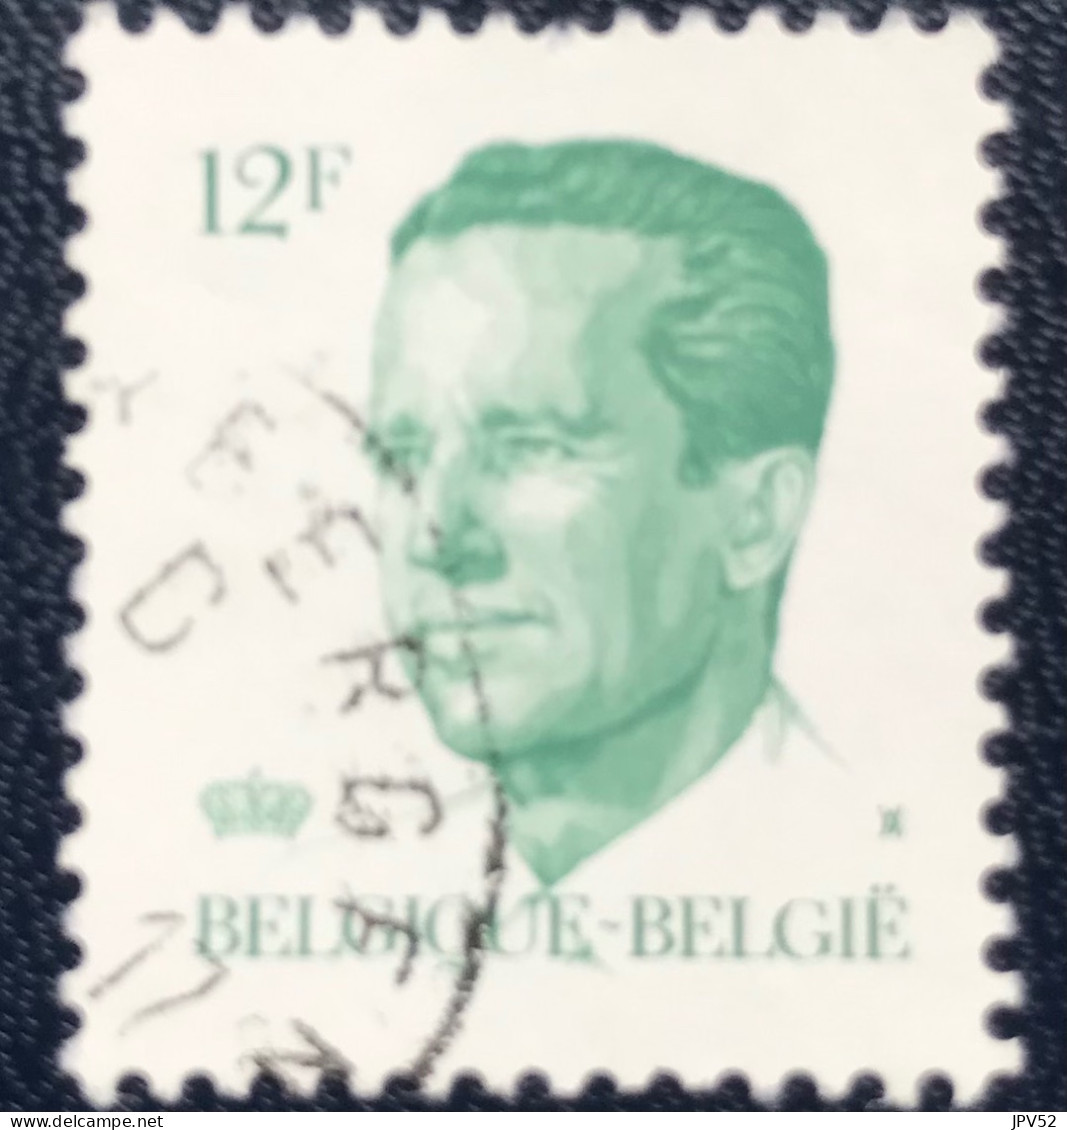 België - Belgique - C18/15 - 1984 - (°)used - Michel 2165 - Koning Boudewijn - 1981-1990 Velghe